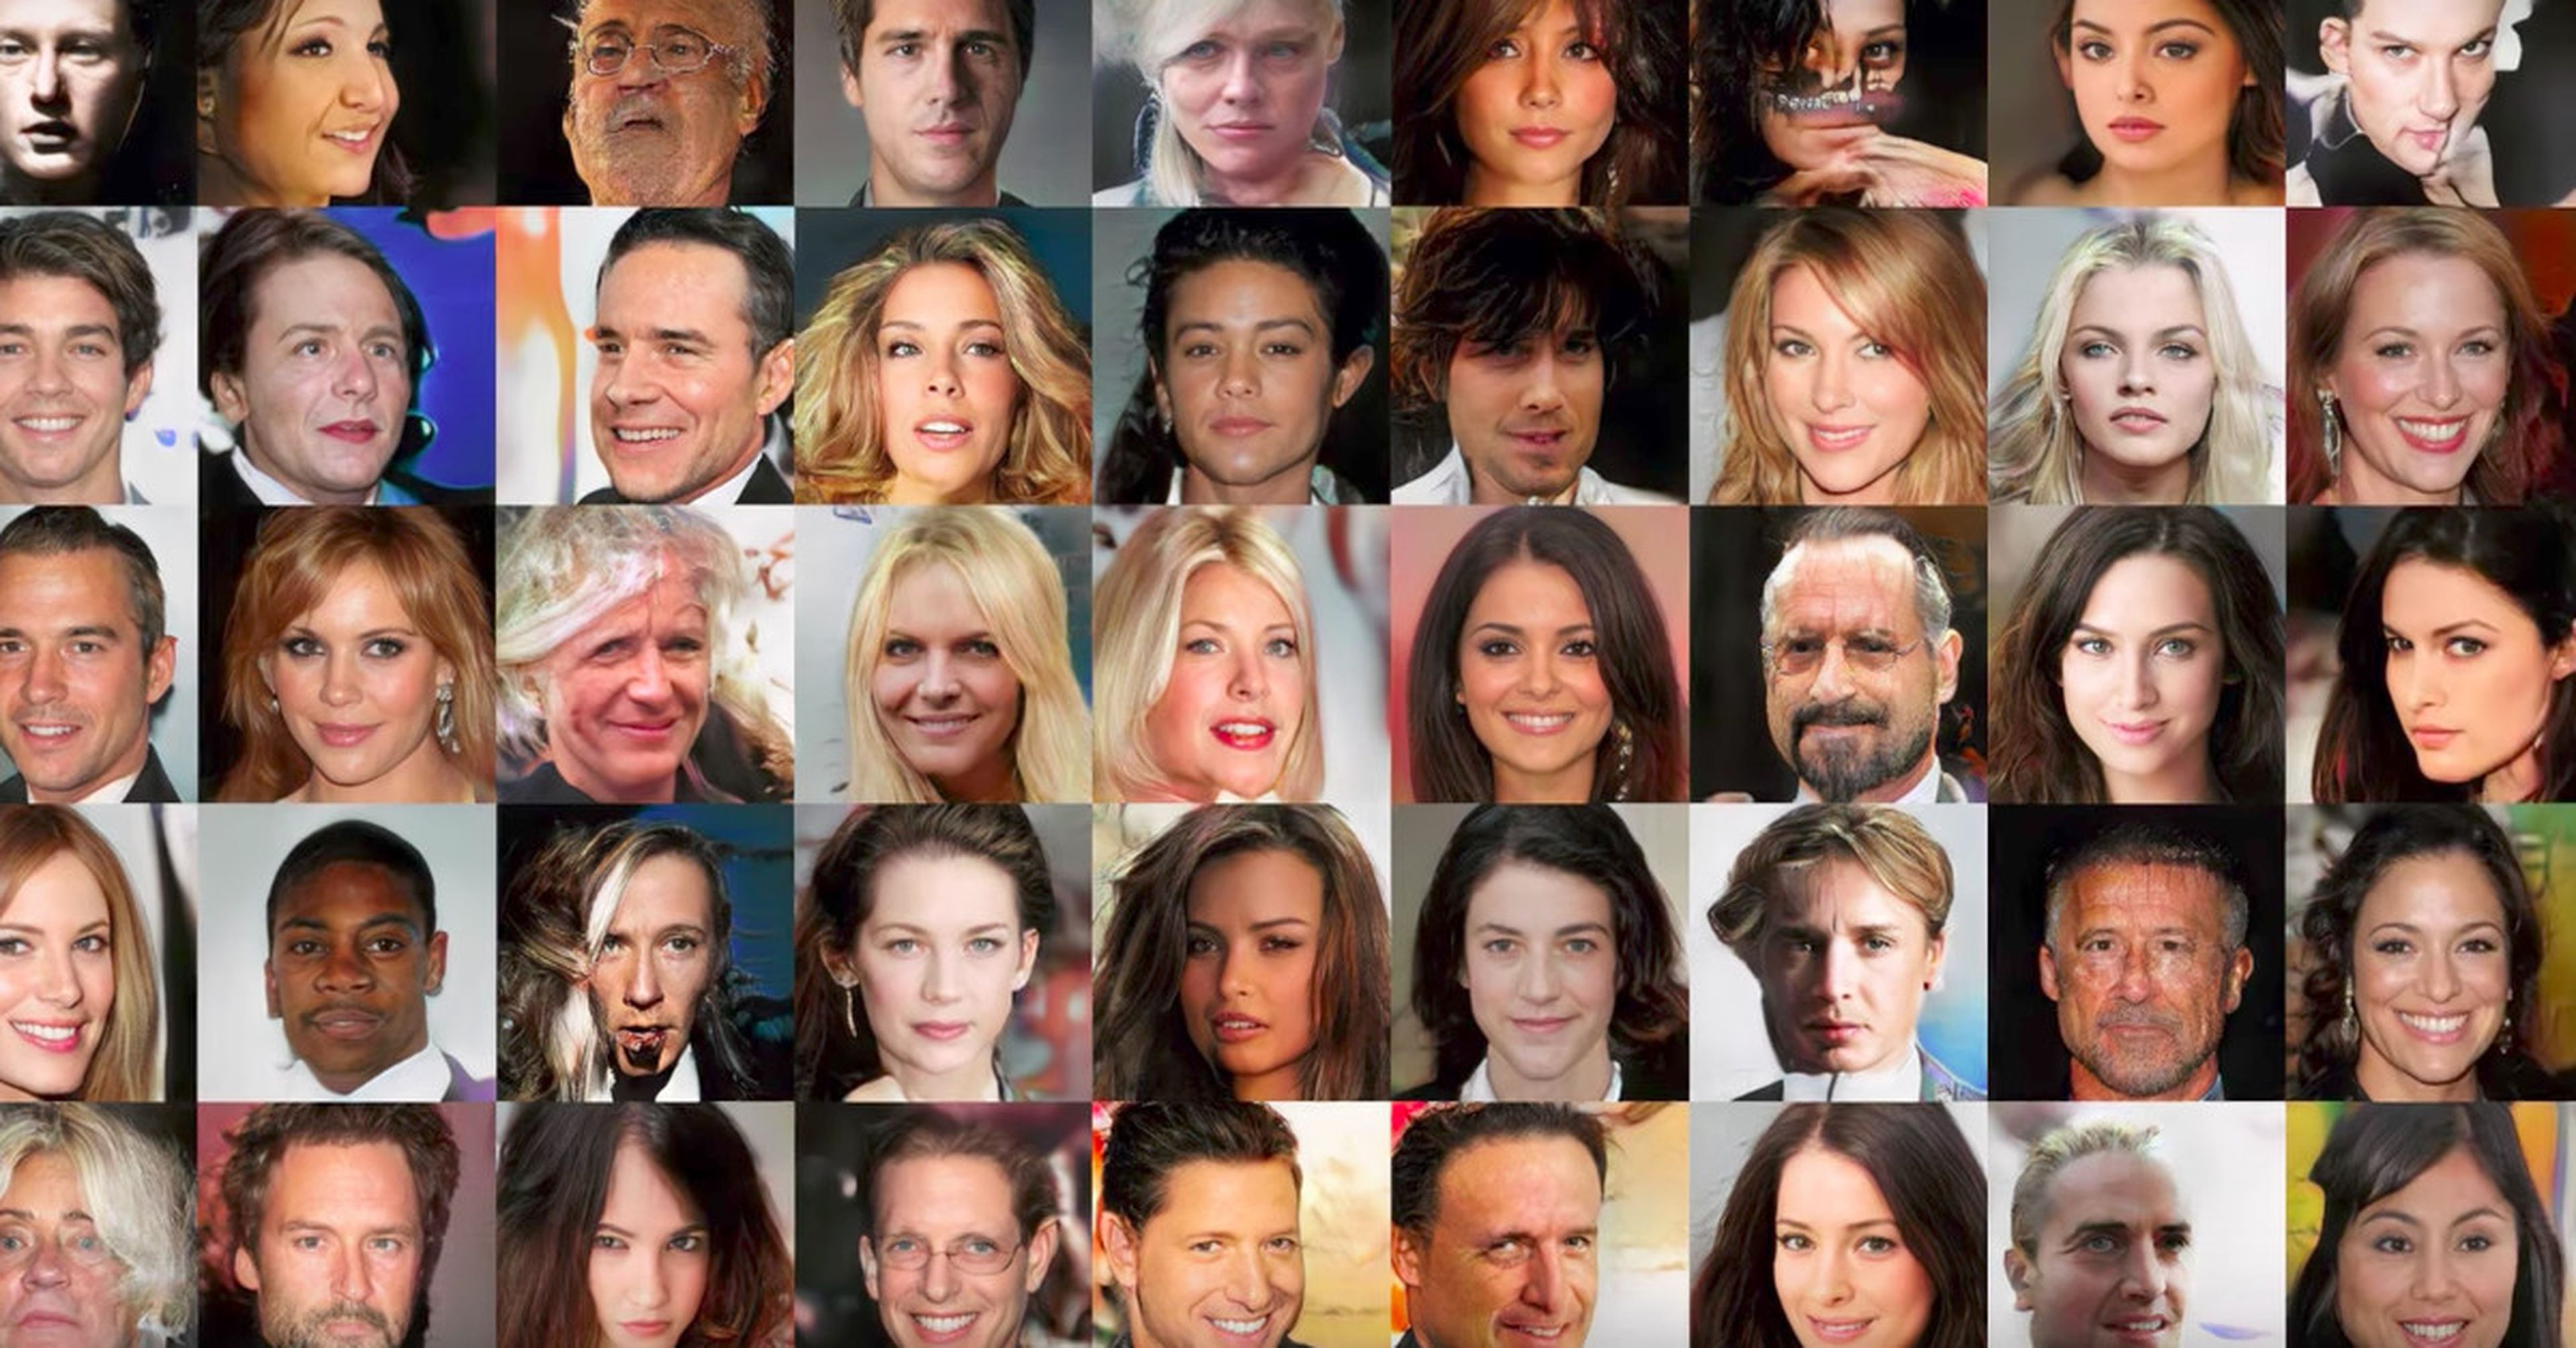 Todas estas caras son falsas: han sido creadas por ordenado a través de inteligencia artificial.